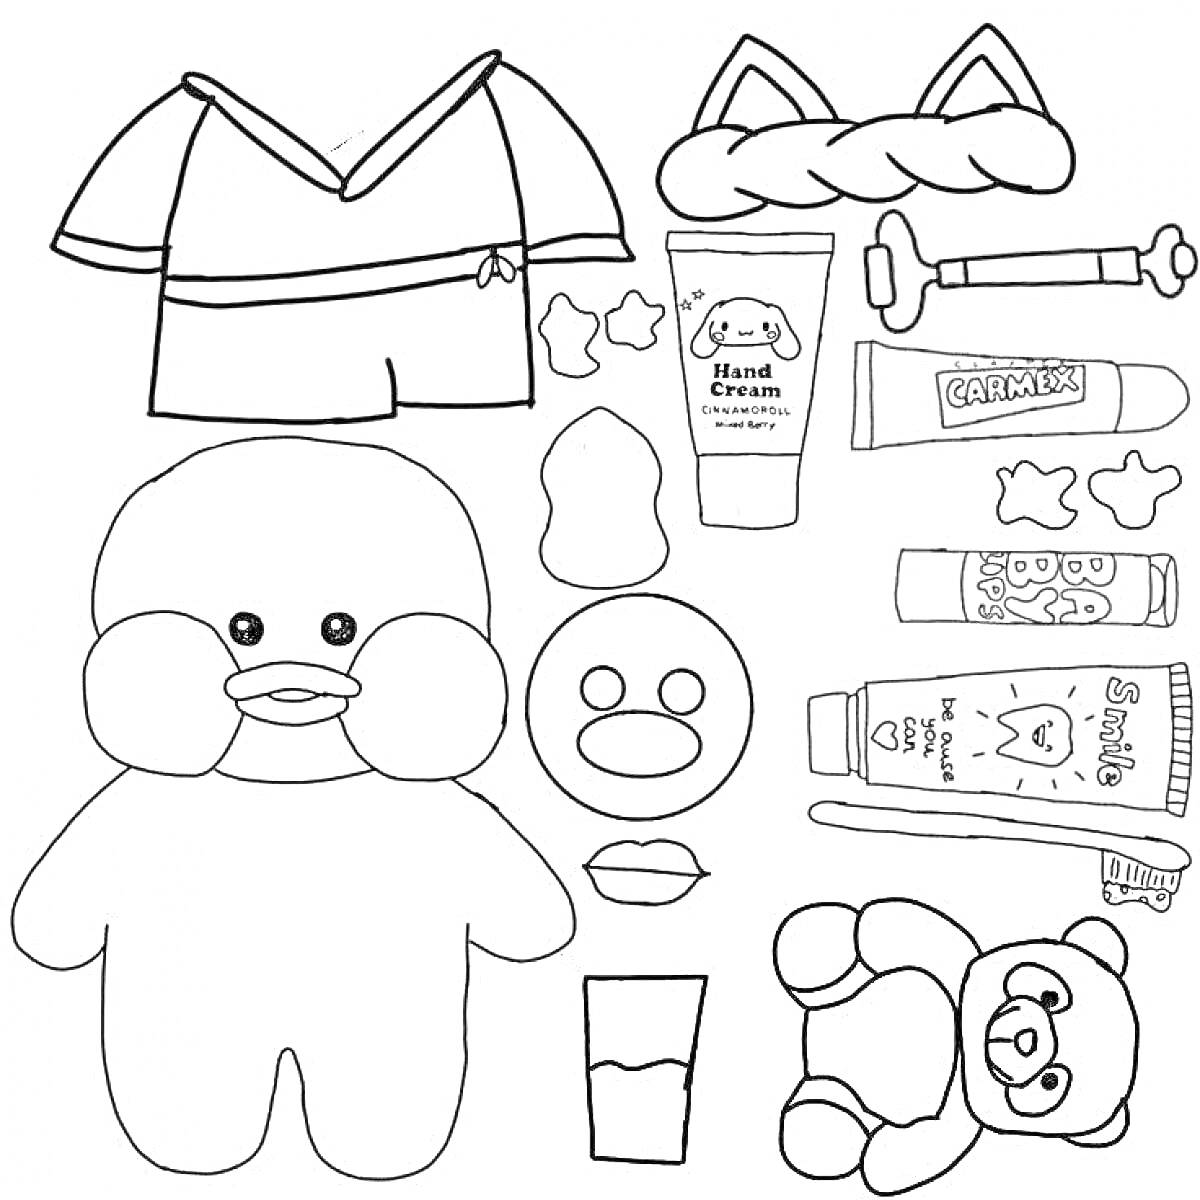 Раскраска Уточка Лалафанфан с одеждой и аксессуарами (утенок, рубашка с шортами, обруч с ушками, тюбики крема, ножницы, мыло, банный мыльный пузырь, плюшевый медведь, стакан)